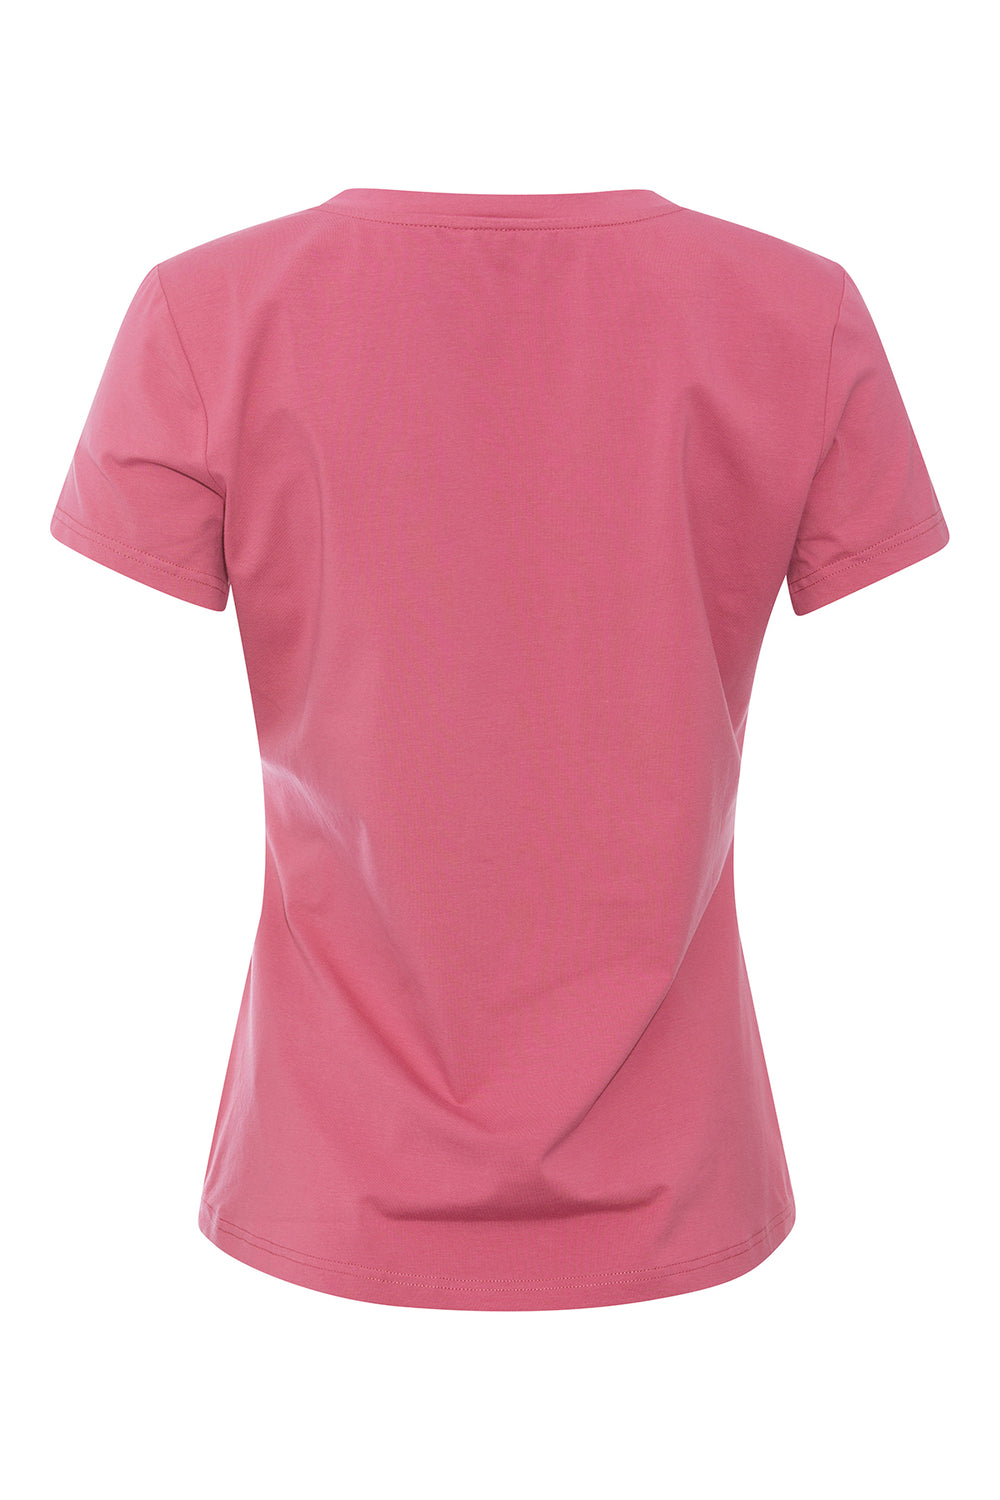 PBO Phio T-shirt T-SHIRTS 853 Dry rose